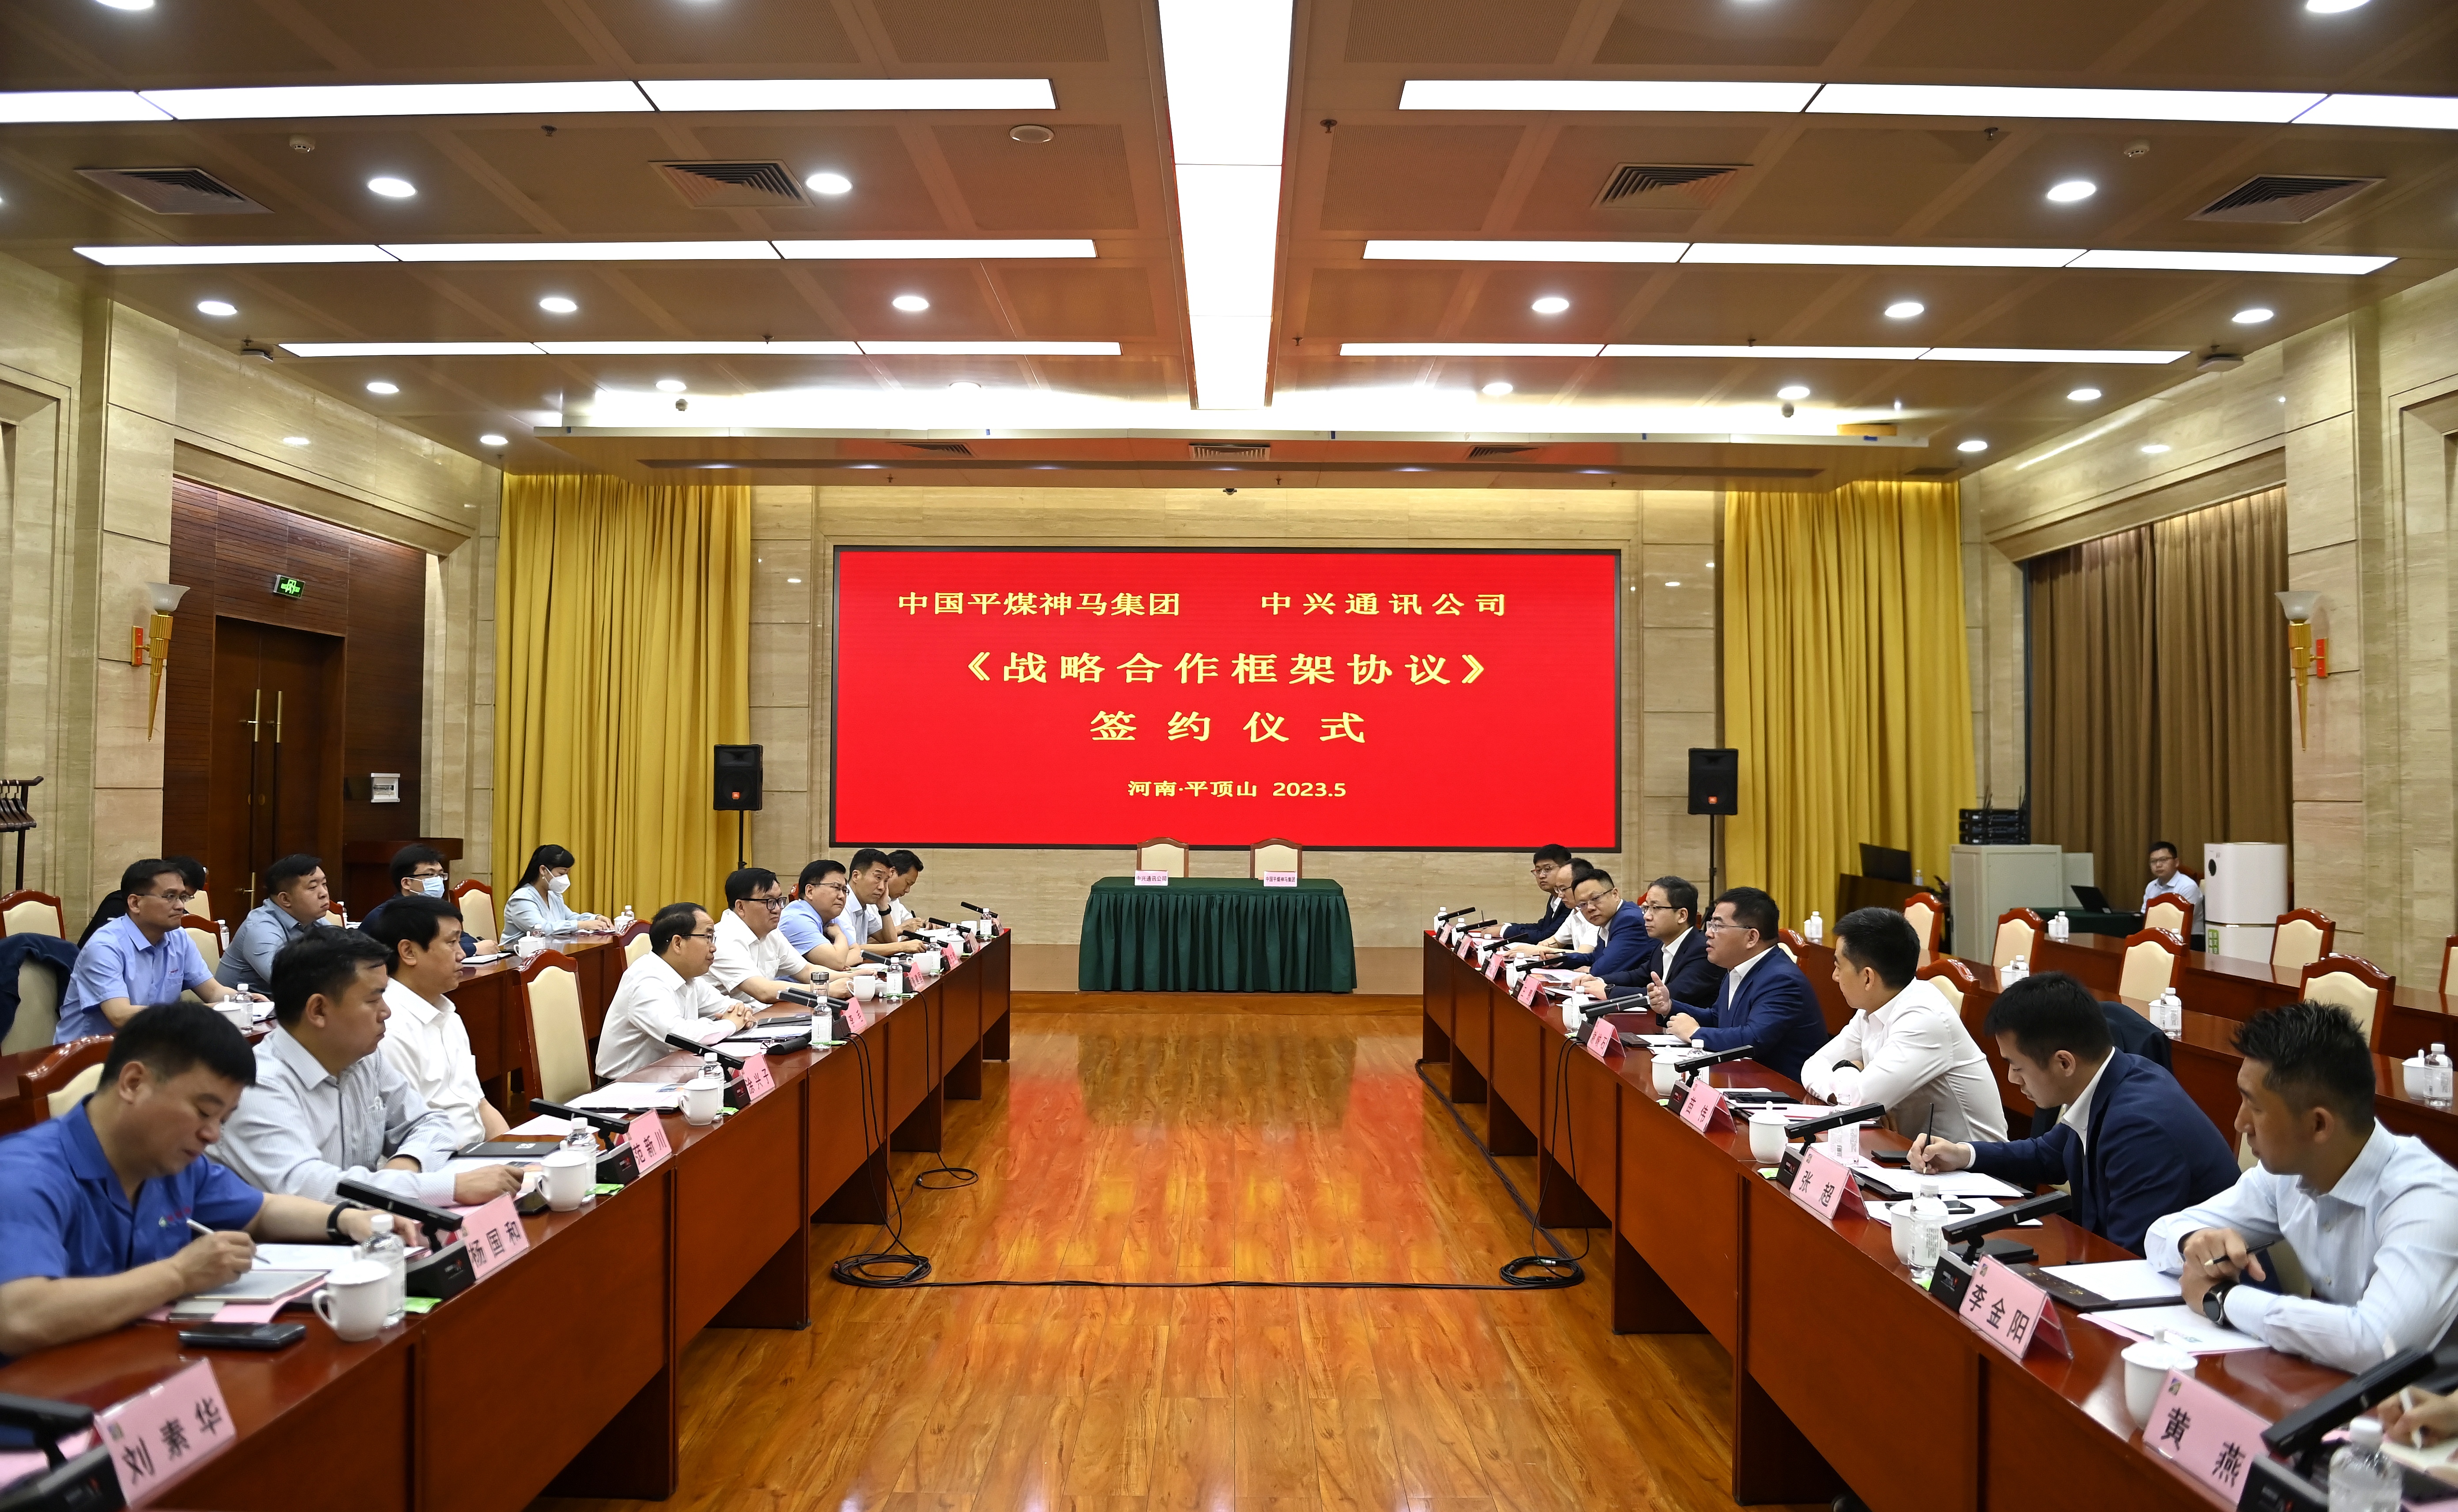 集团与中兴通讯签订战略合作框架协议 李毛谢峻石出席签约仪式